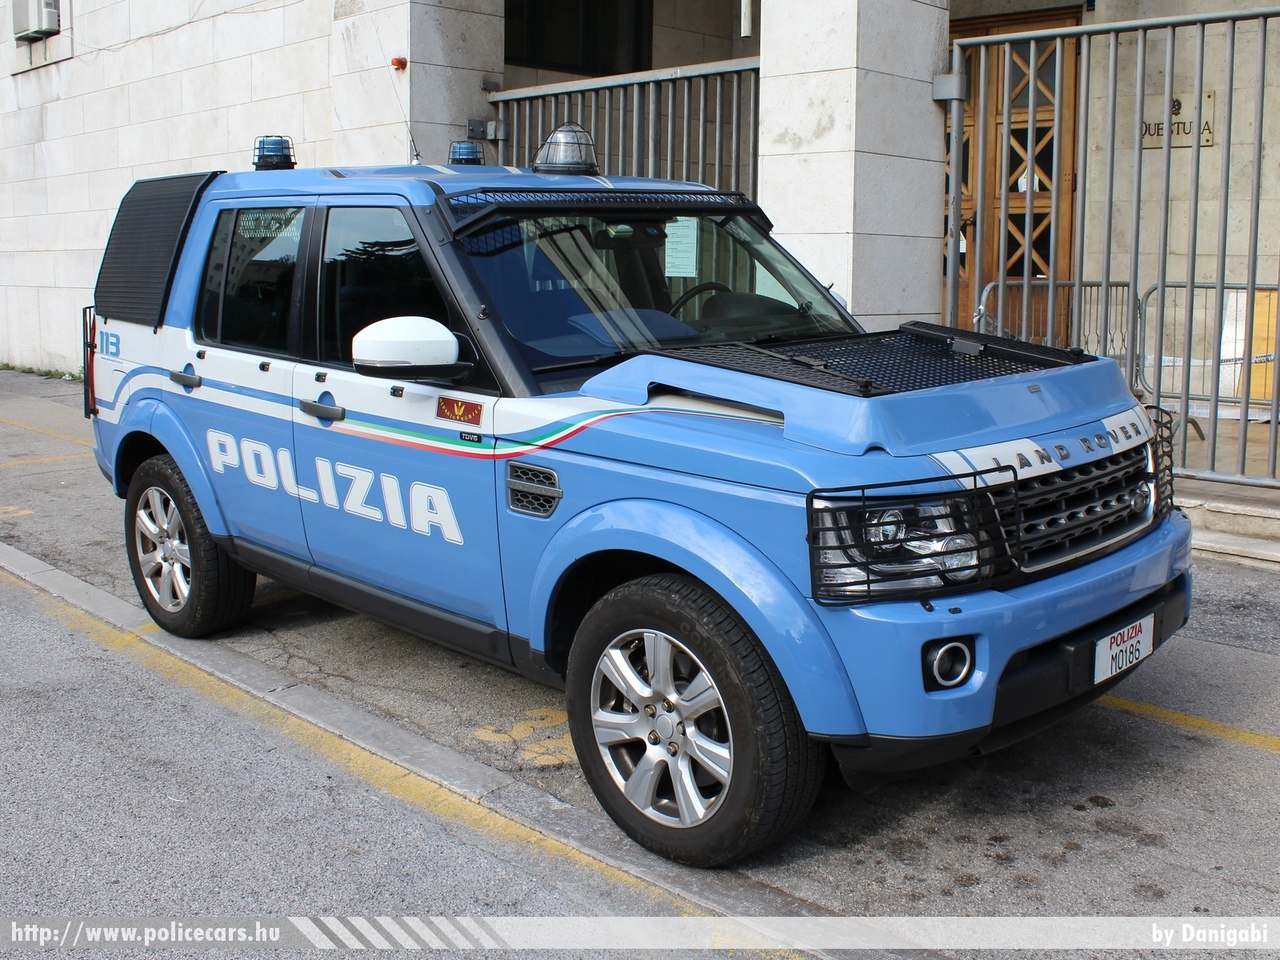 Land Rover Discovery 4, fotó: Danigabi
Keywords: rendőr rendőrautó rendőrség olasz Olaszország police policecar Italy italian